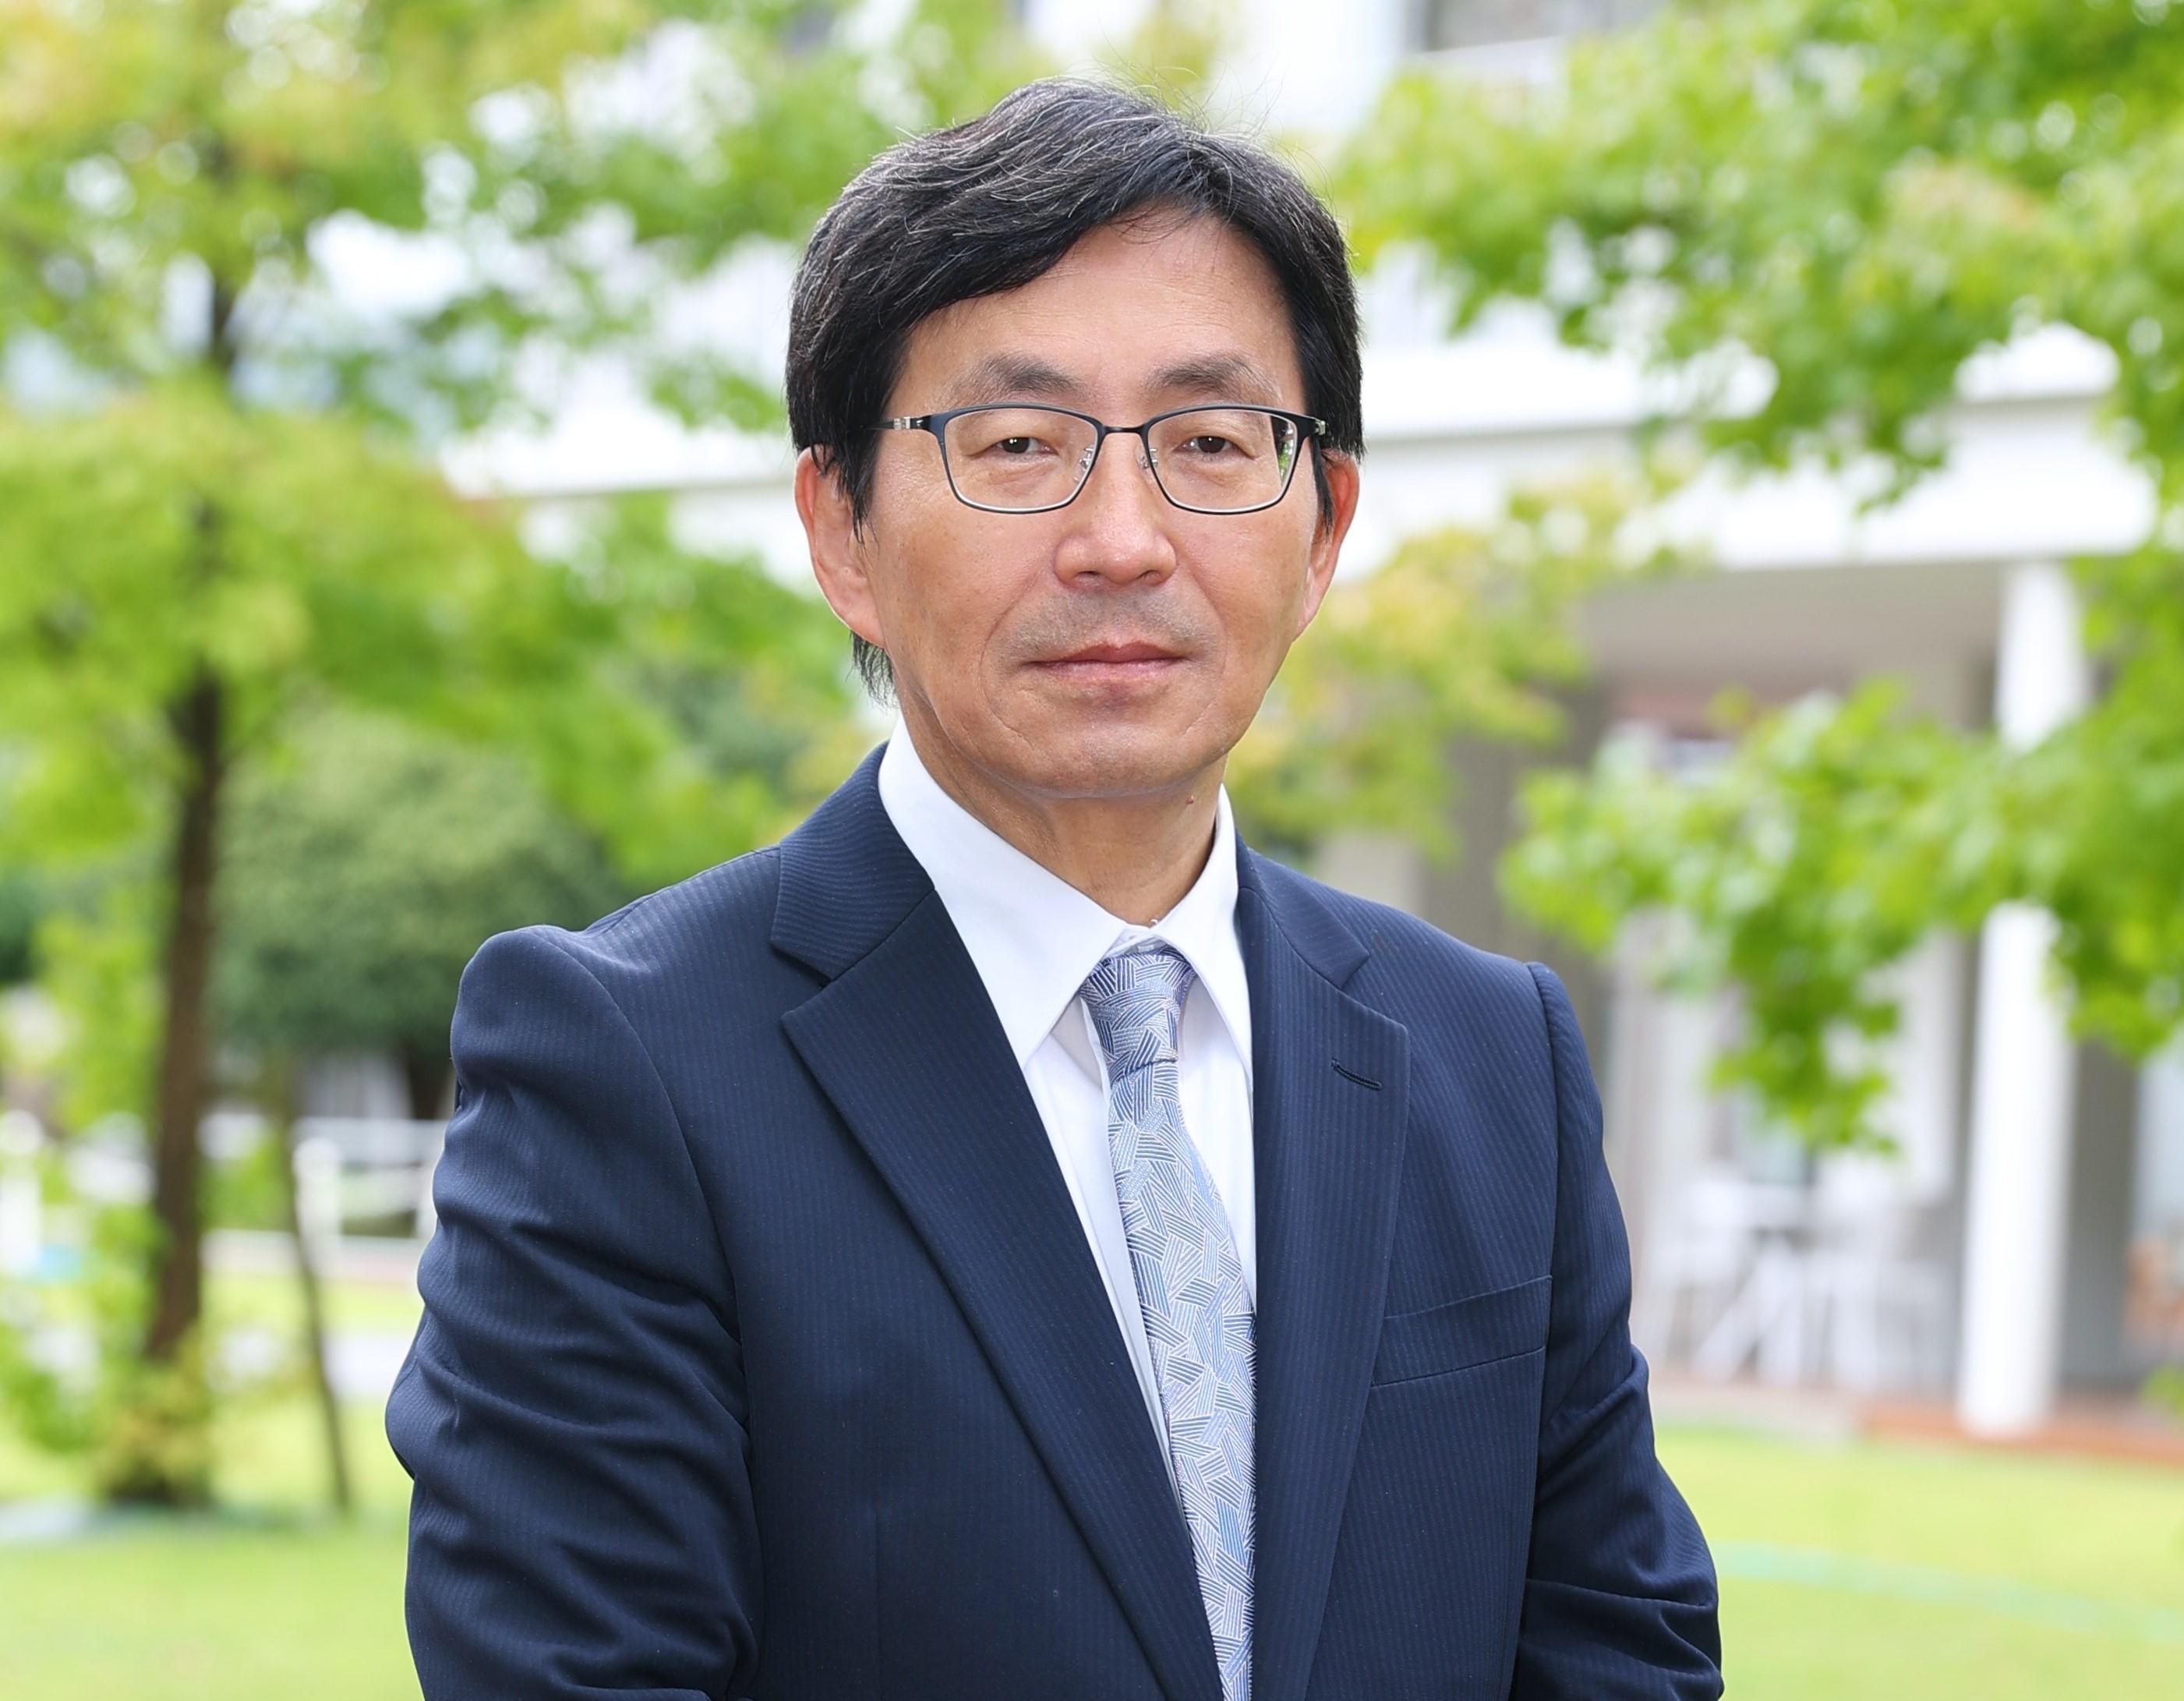 崇城大学の新学長に小野長門氏が就任 -- 「感謝と笑顔のあふれる温かいeキャンパス構想」を推進